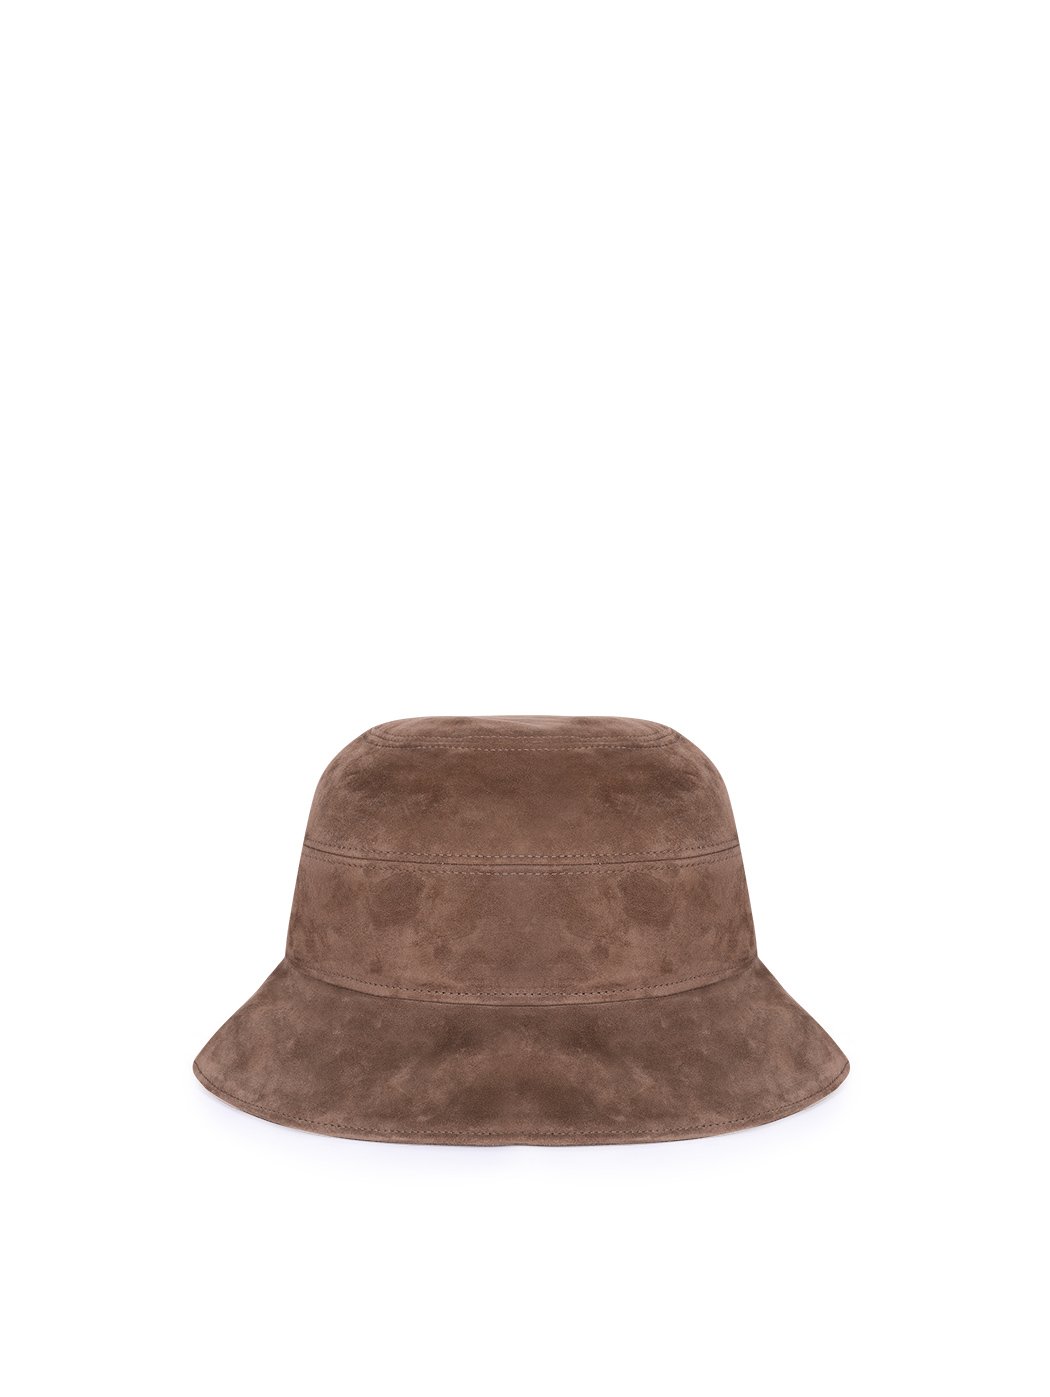 Замшевая шляпа - клош коричневого цвета